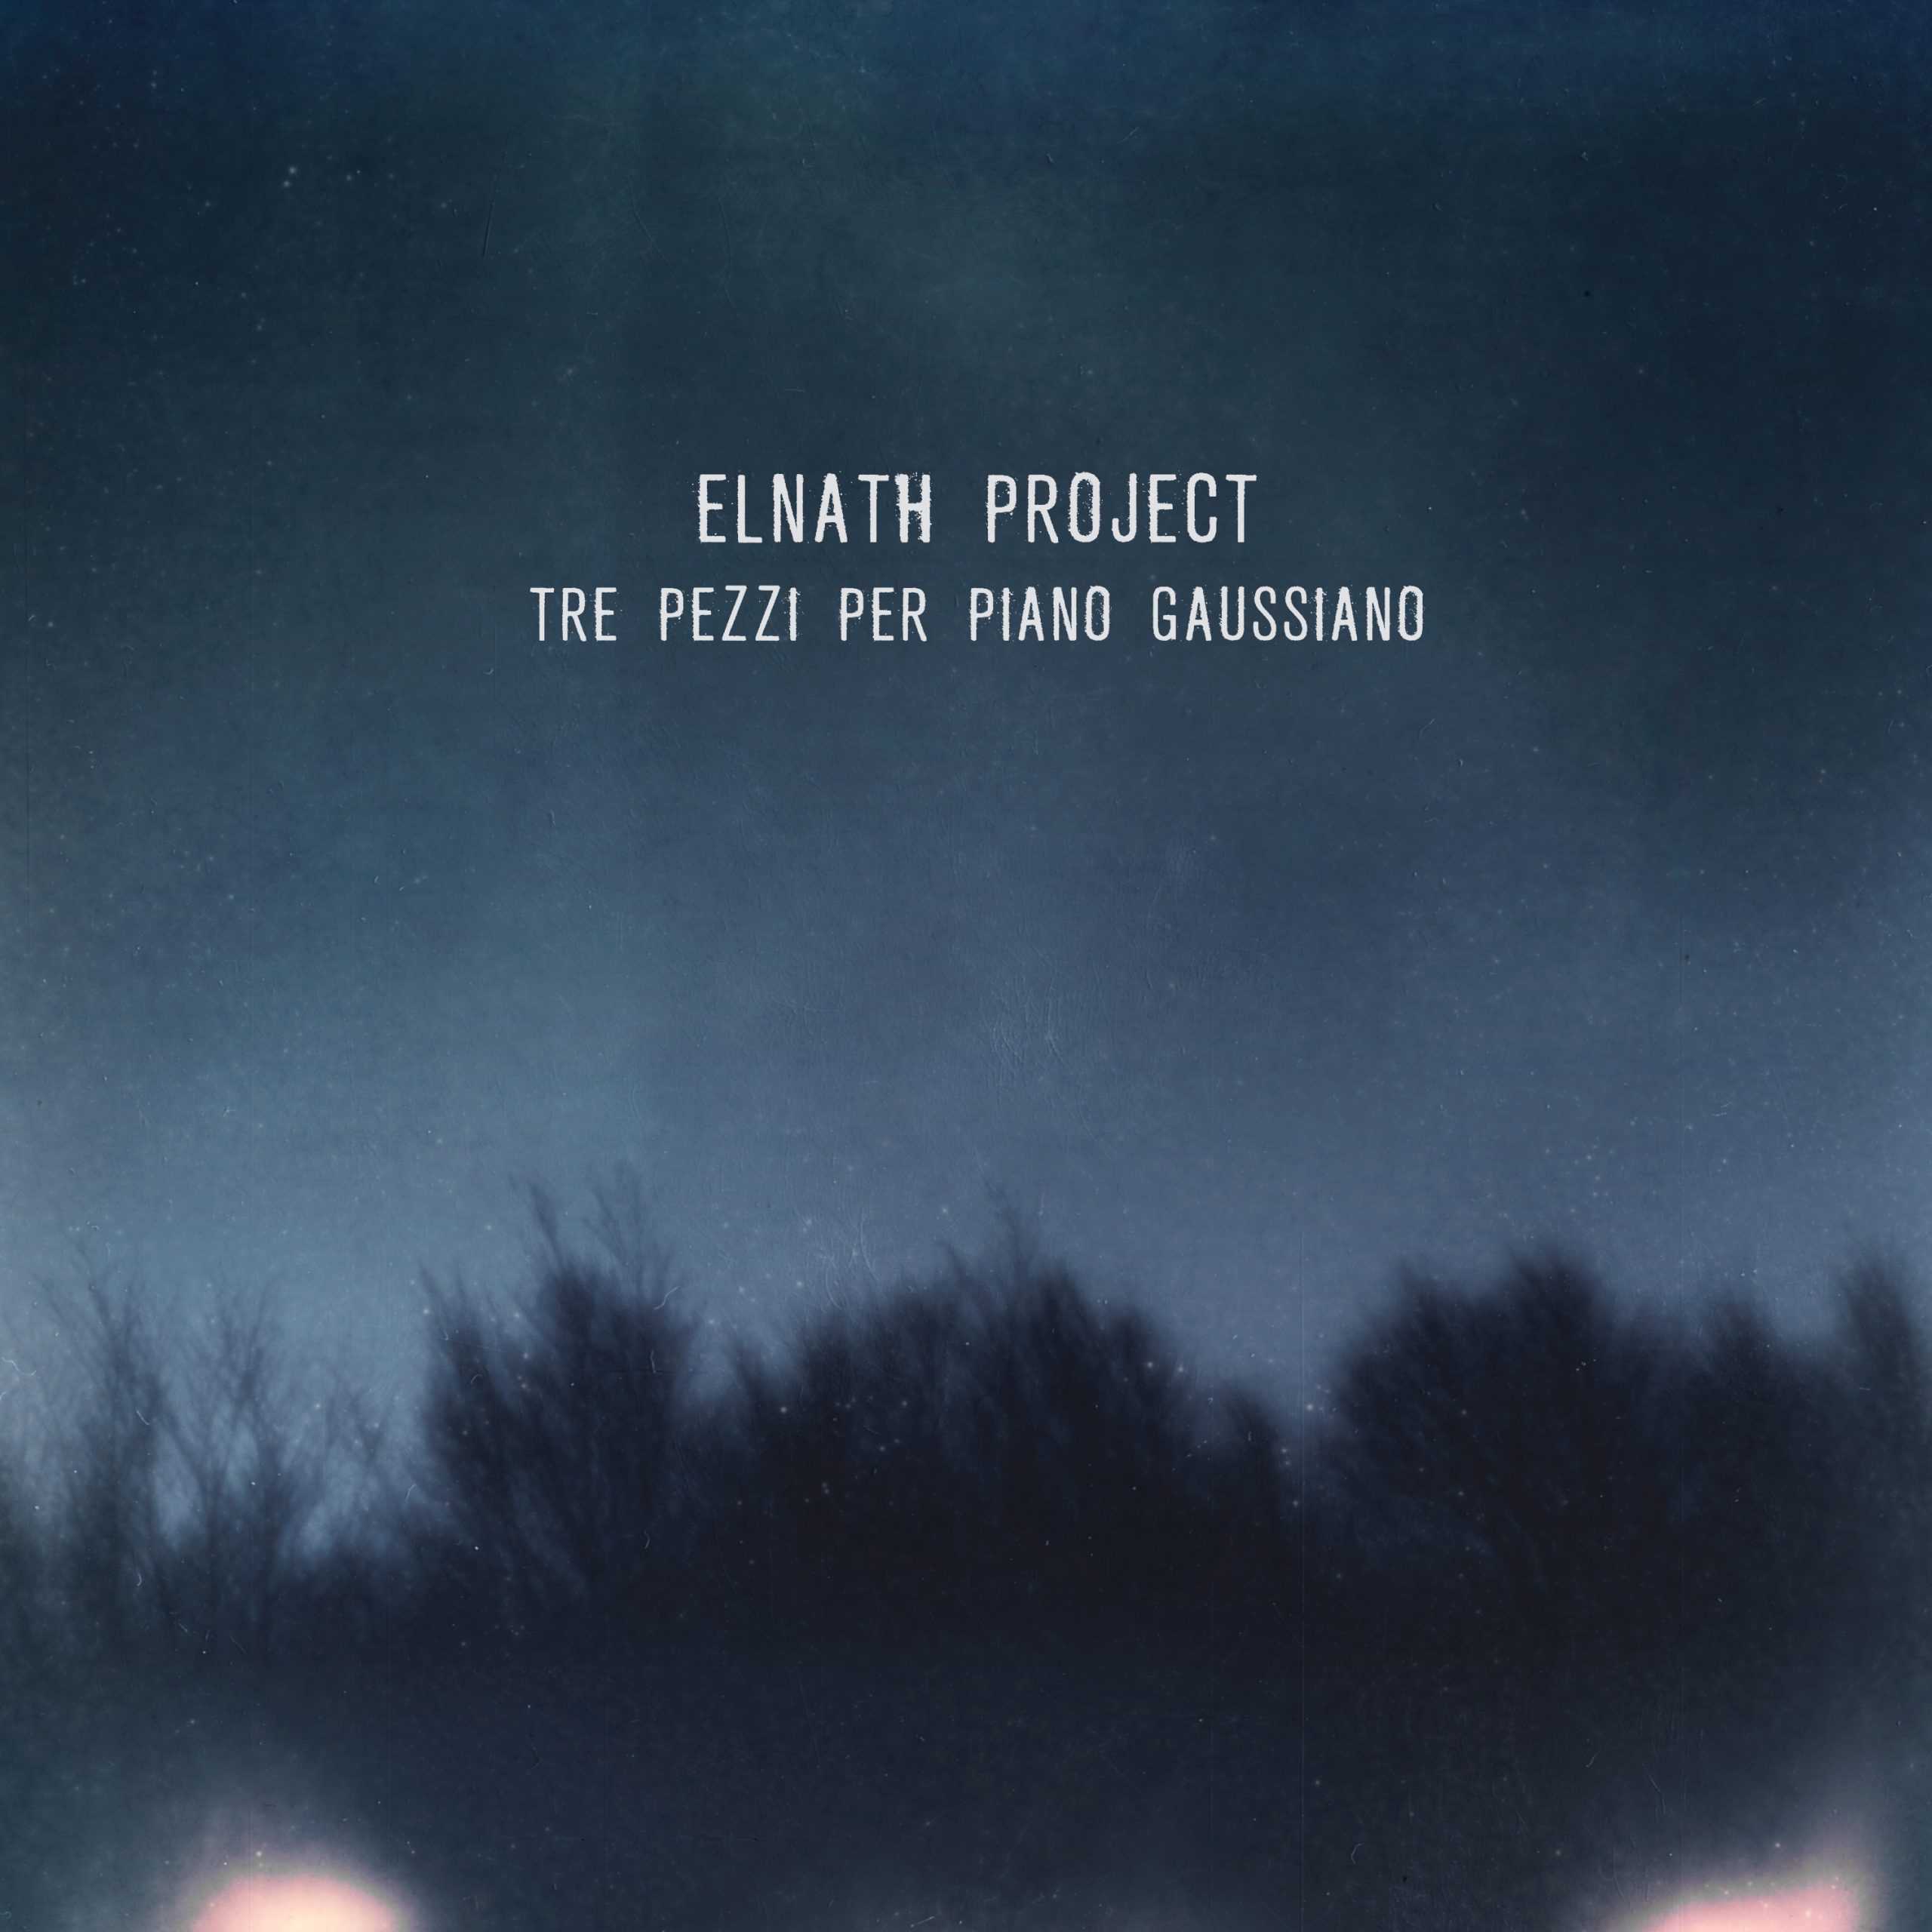 Elnath-Project-Tre-pezzi-per-piano-COVER-scaled-1.jpg